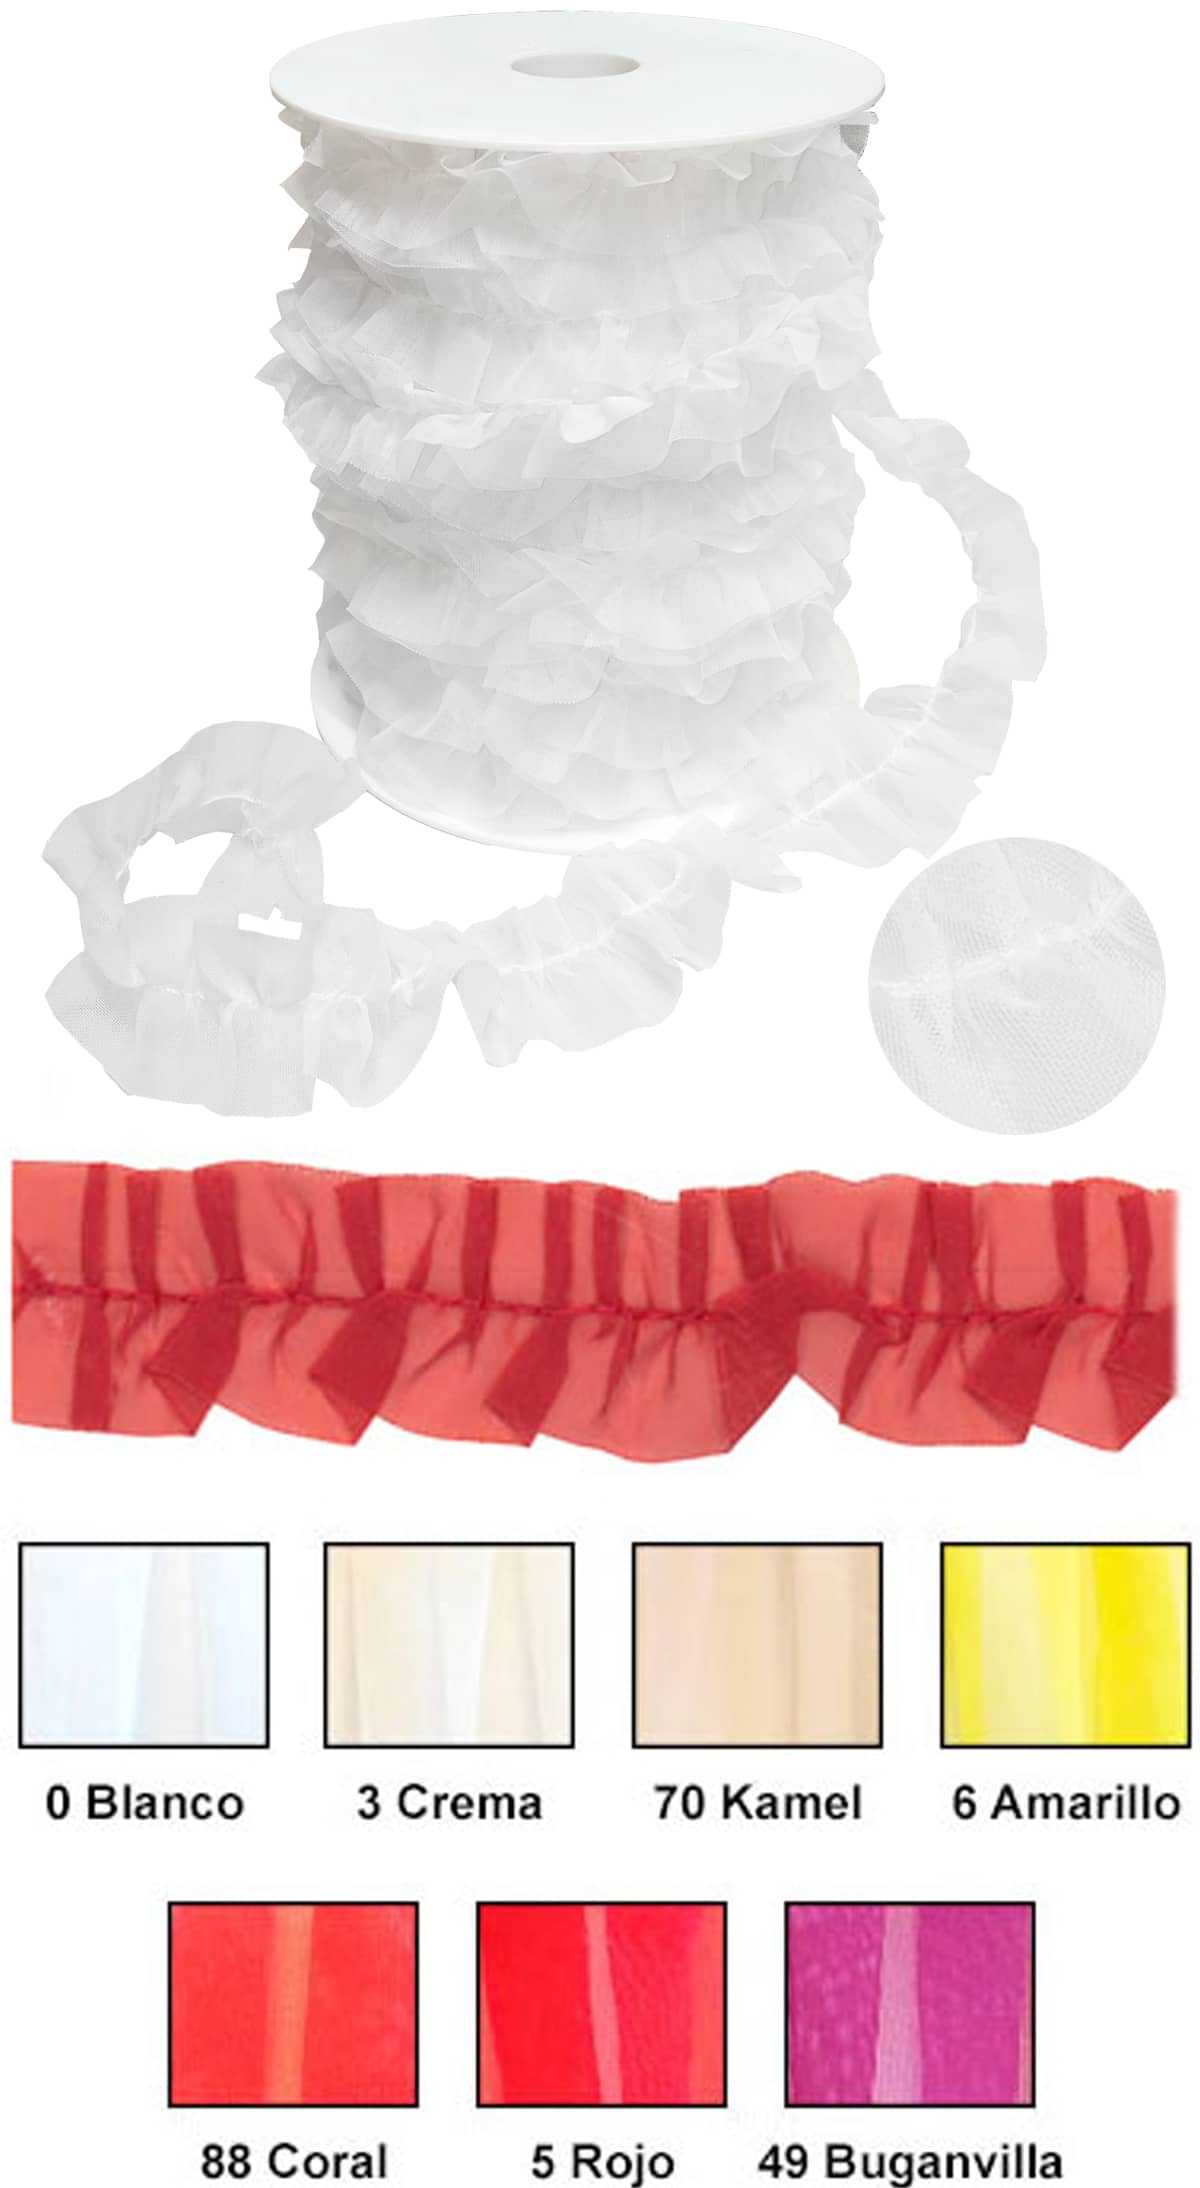 Carta colores  Plisado Carrucha Organdil 30 mm para trajes de flamenca: Blanco, crema, kamel (Camel), Amarillo, Rojo Coral, Rojo y Buganvilla.